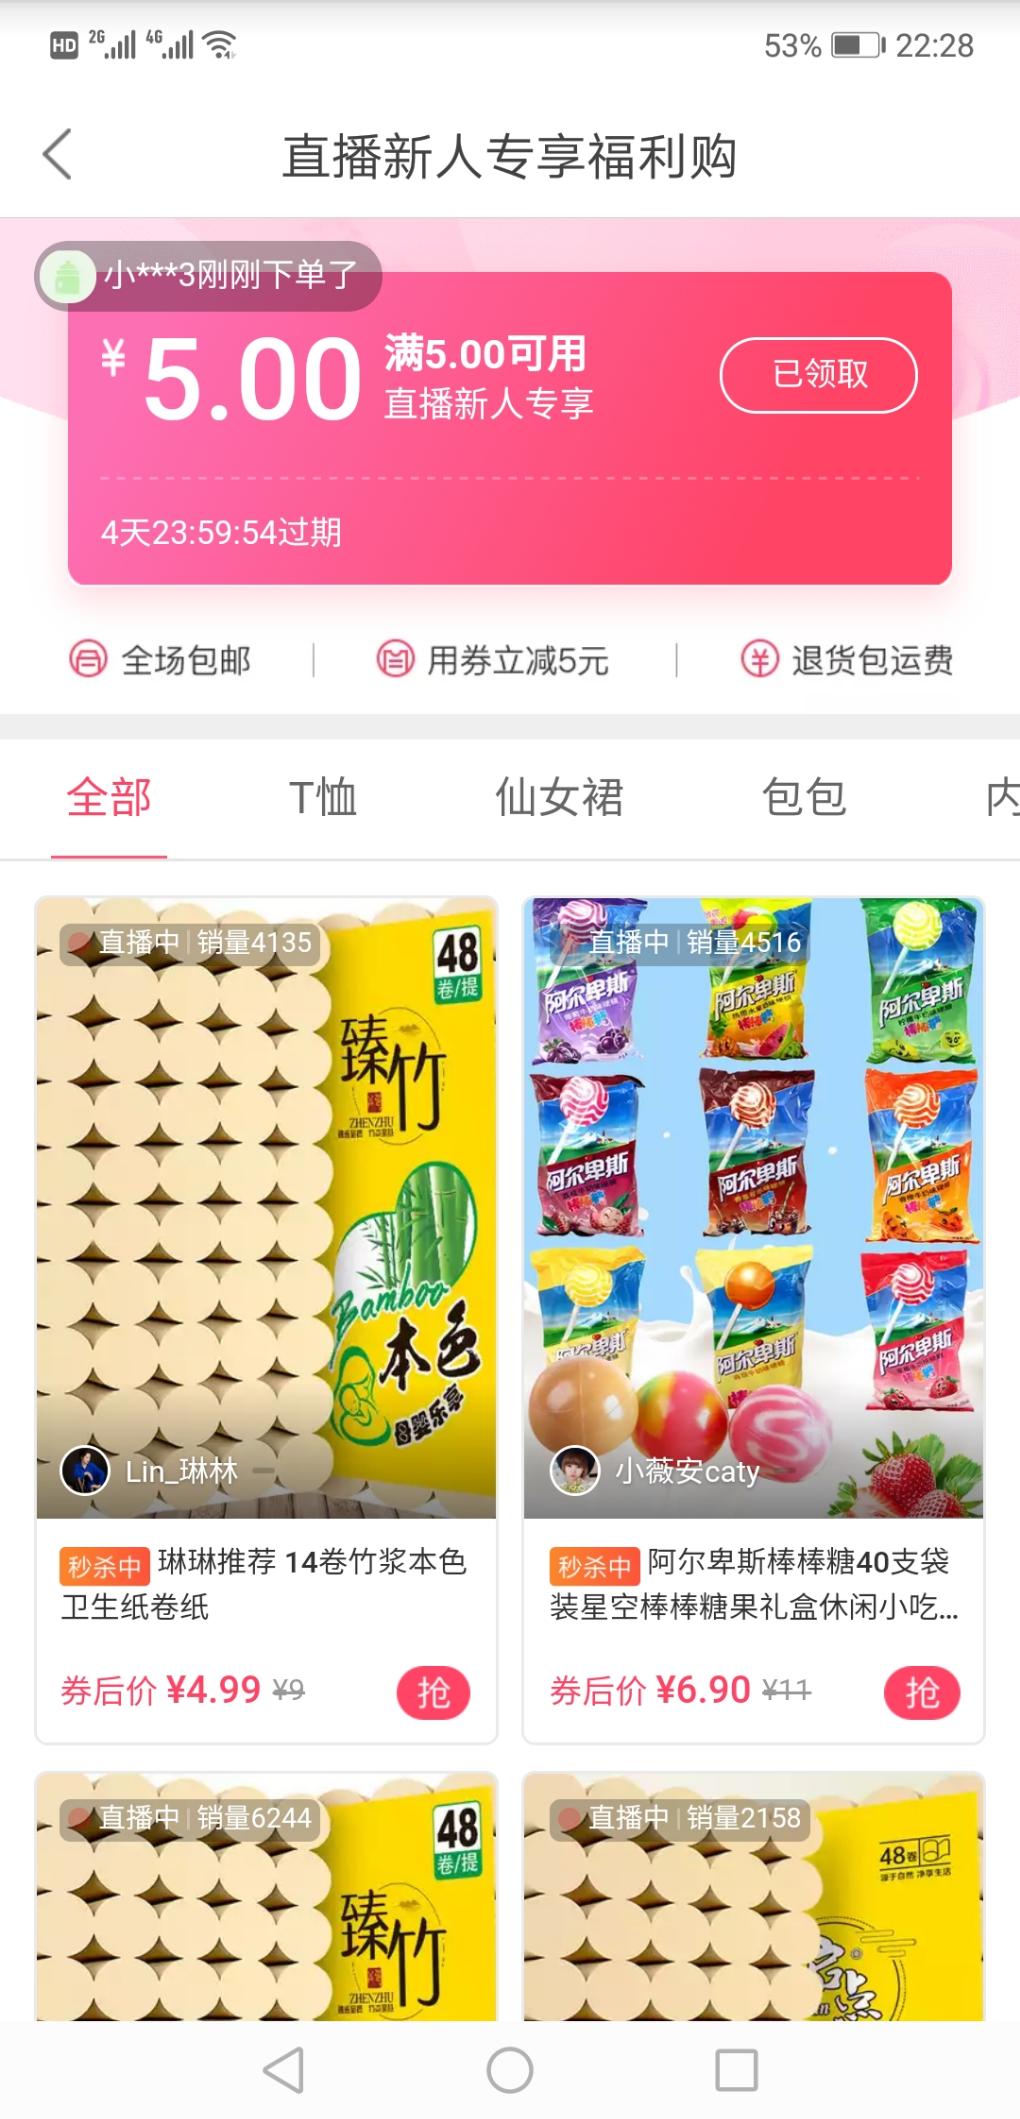 蘑菇街app几毛钱购买9.9元包邮实物  亲测0.9购买了14卷卫生纸-惠小助(52huixz.com)